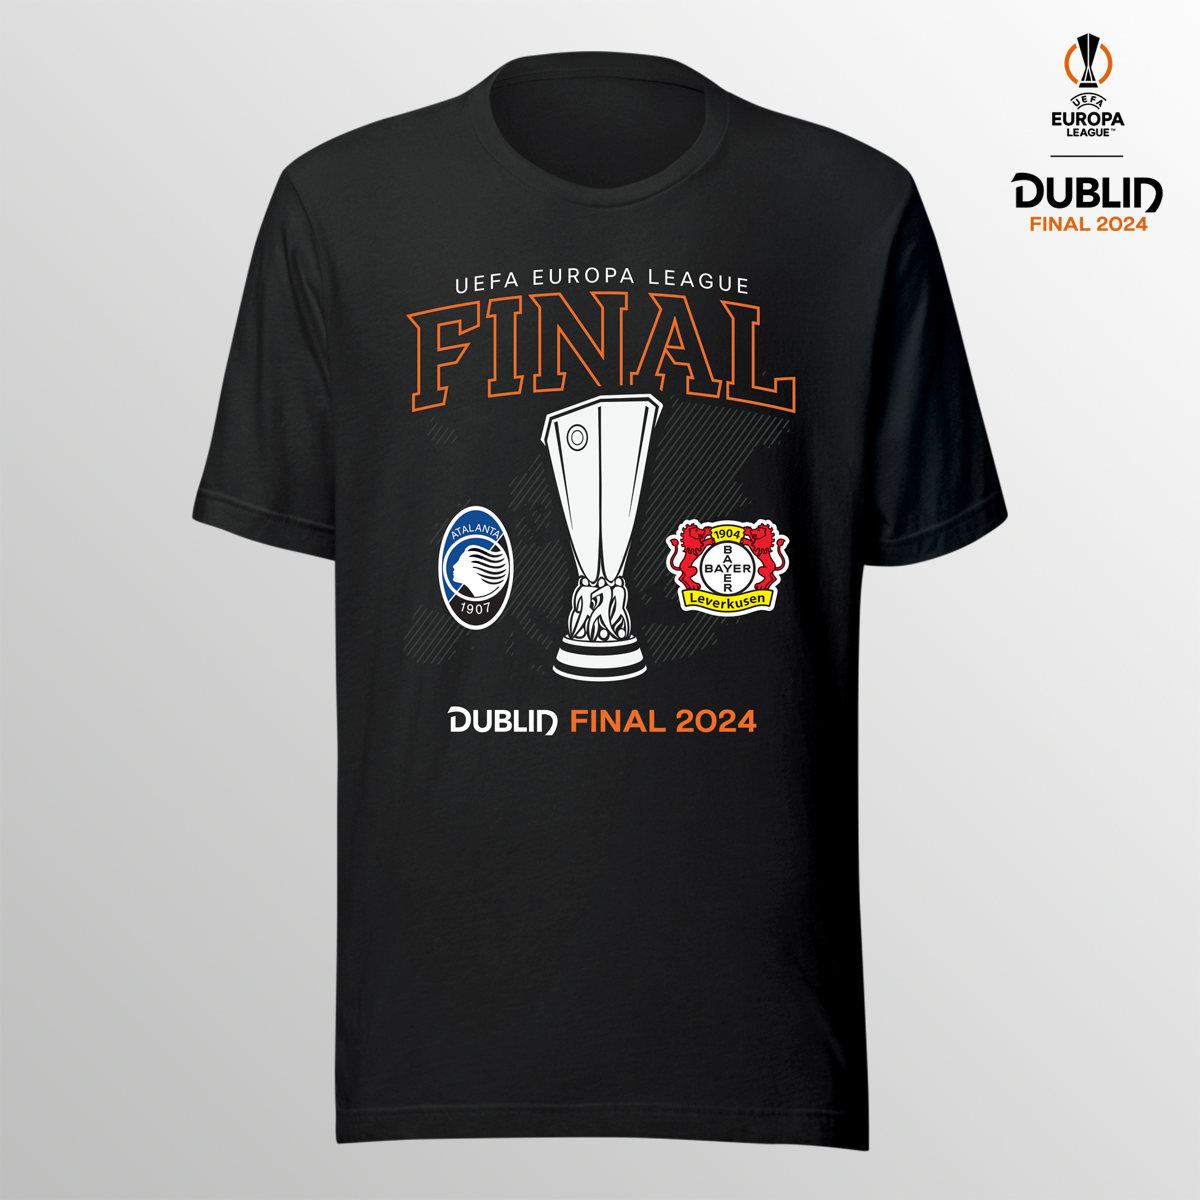 Dublin 24 UEL Final T-shirt